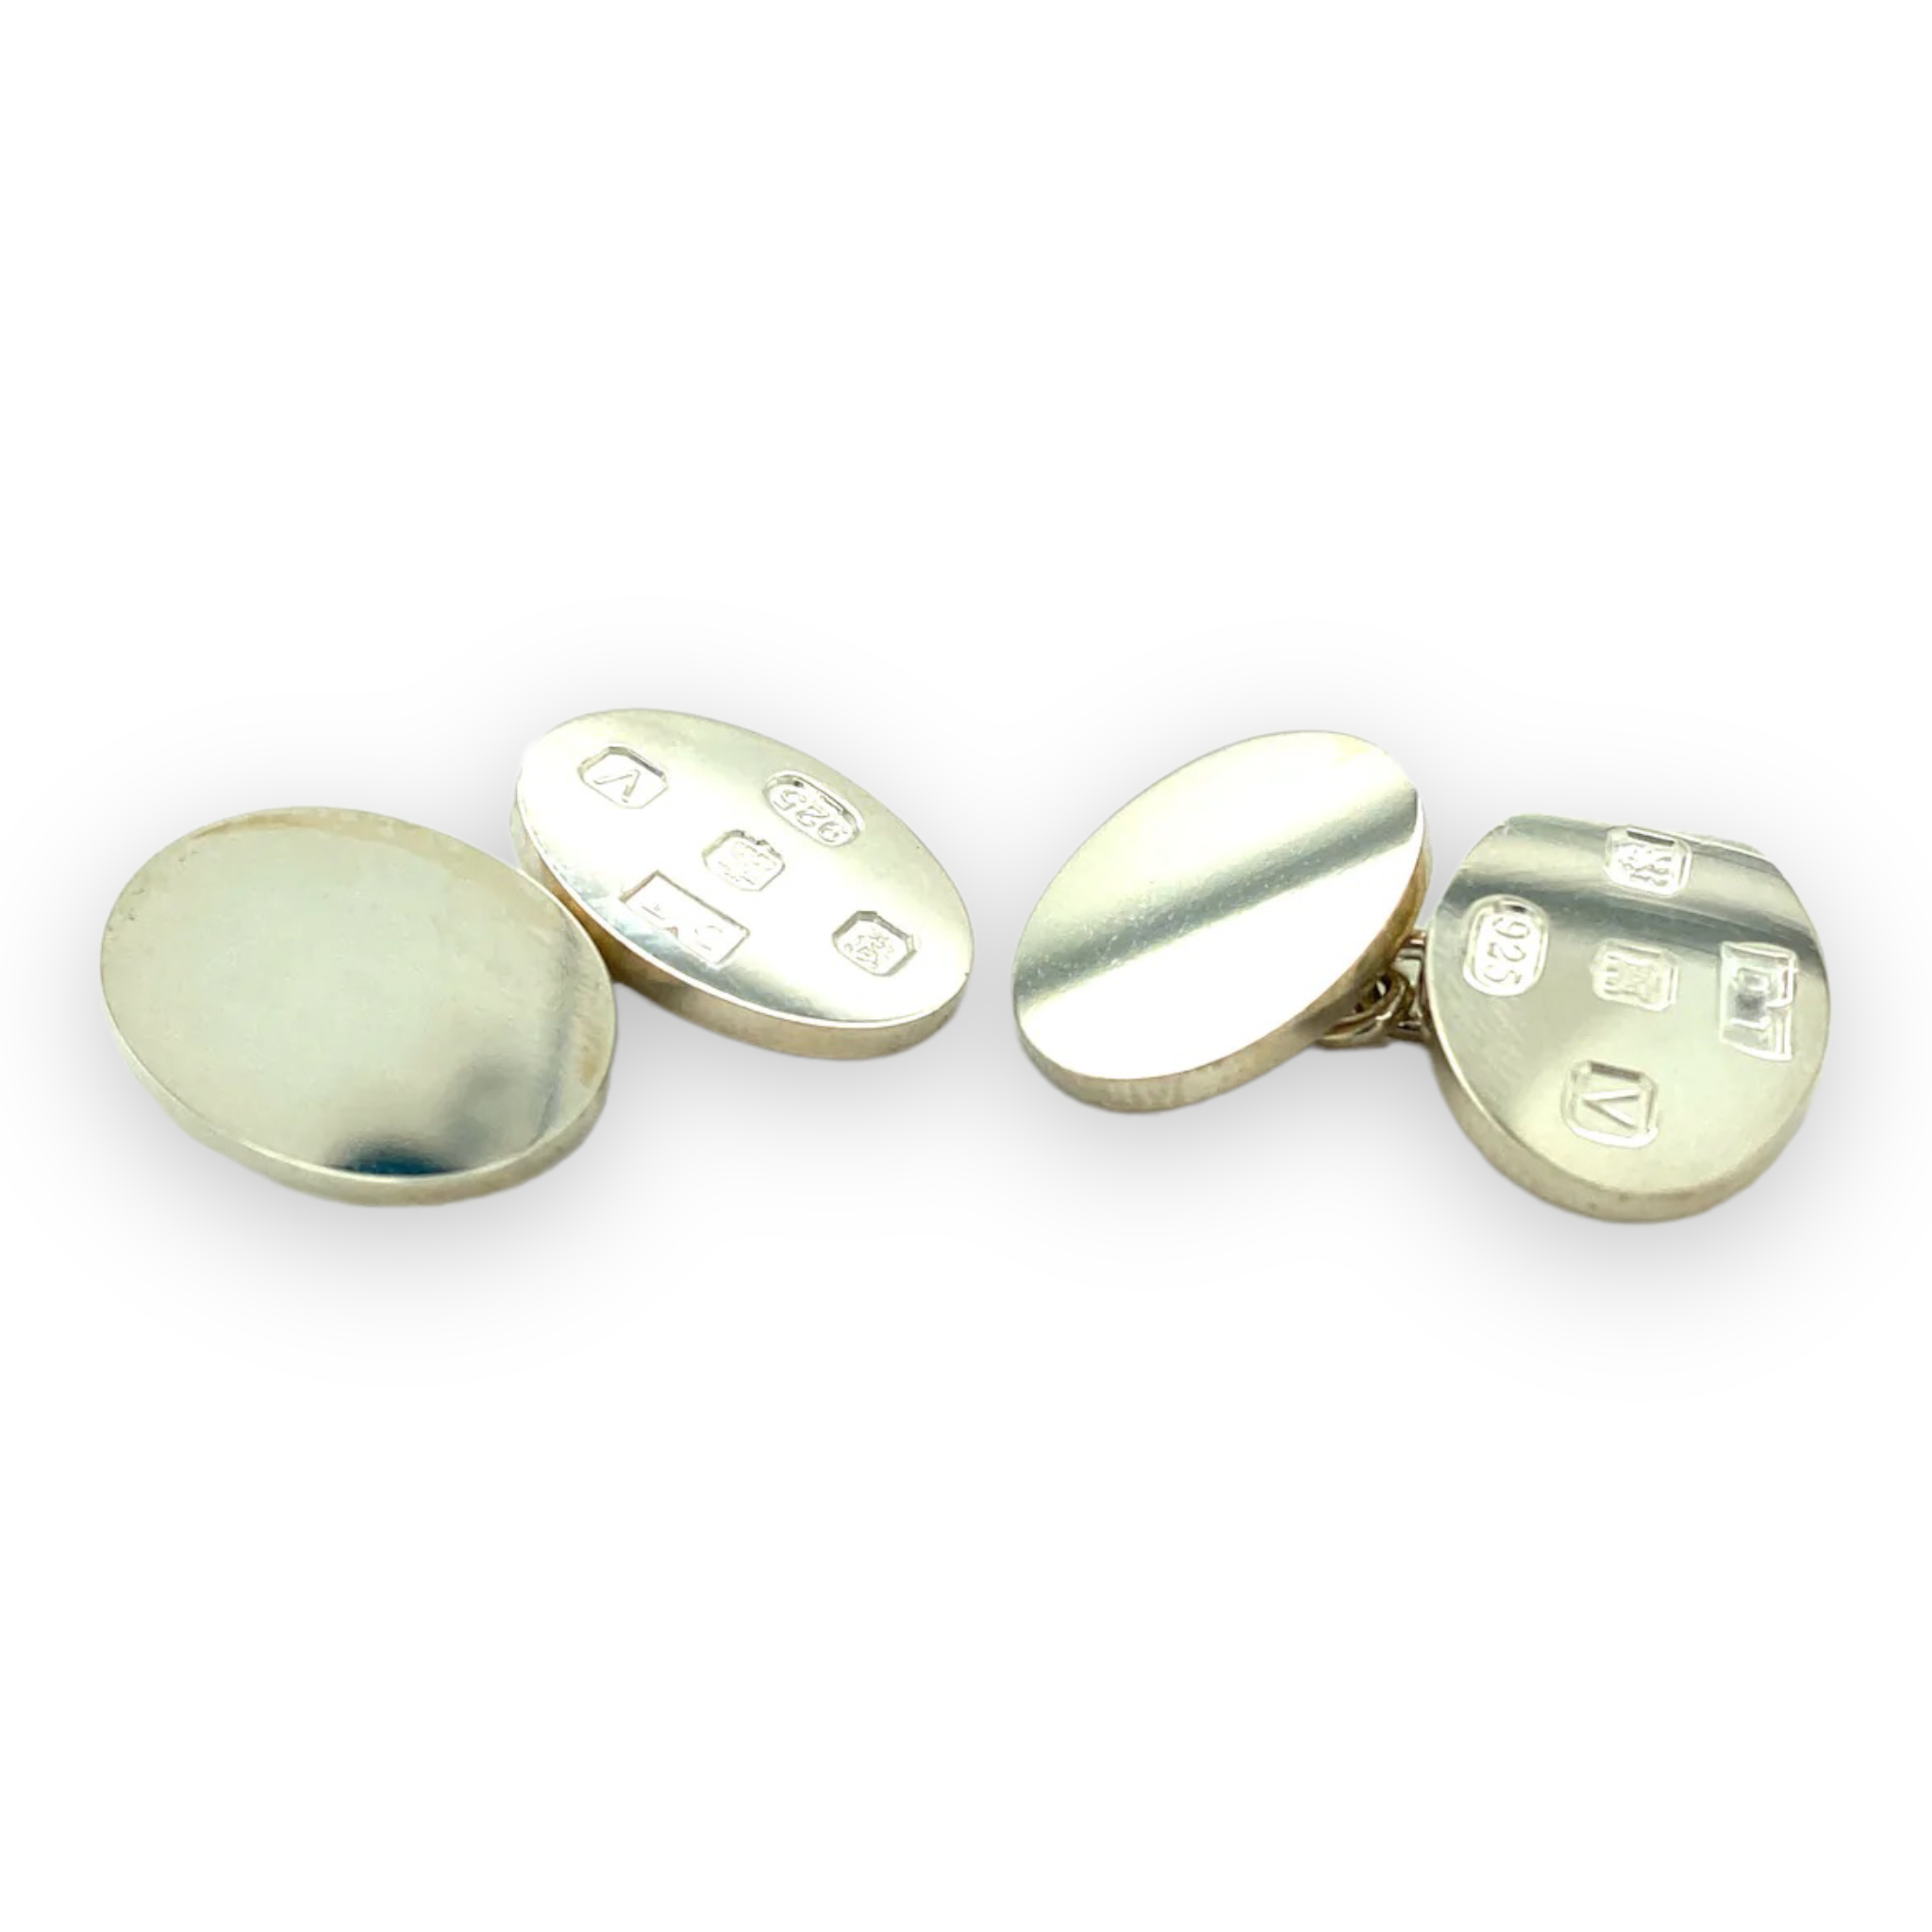 Silver Cufflinks, Hallmark Feature - Wildsmith Jewellery Cufflinks